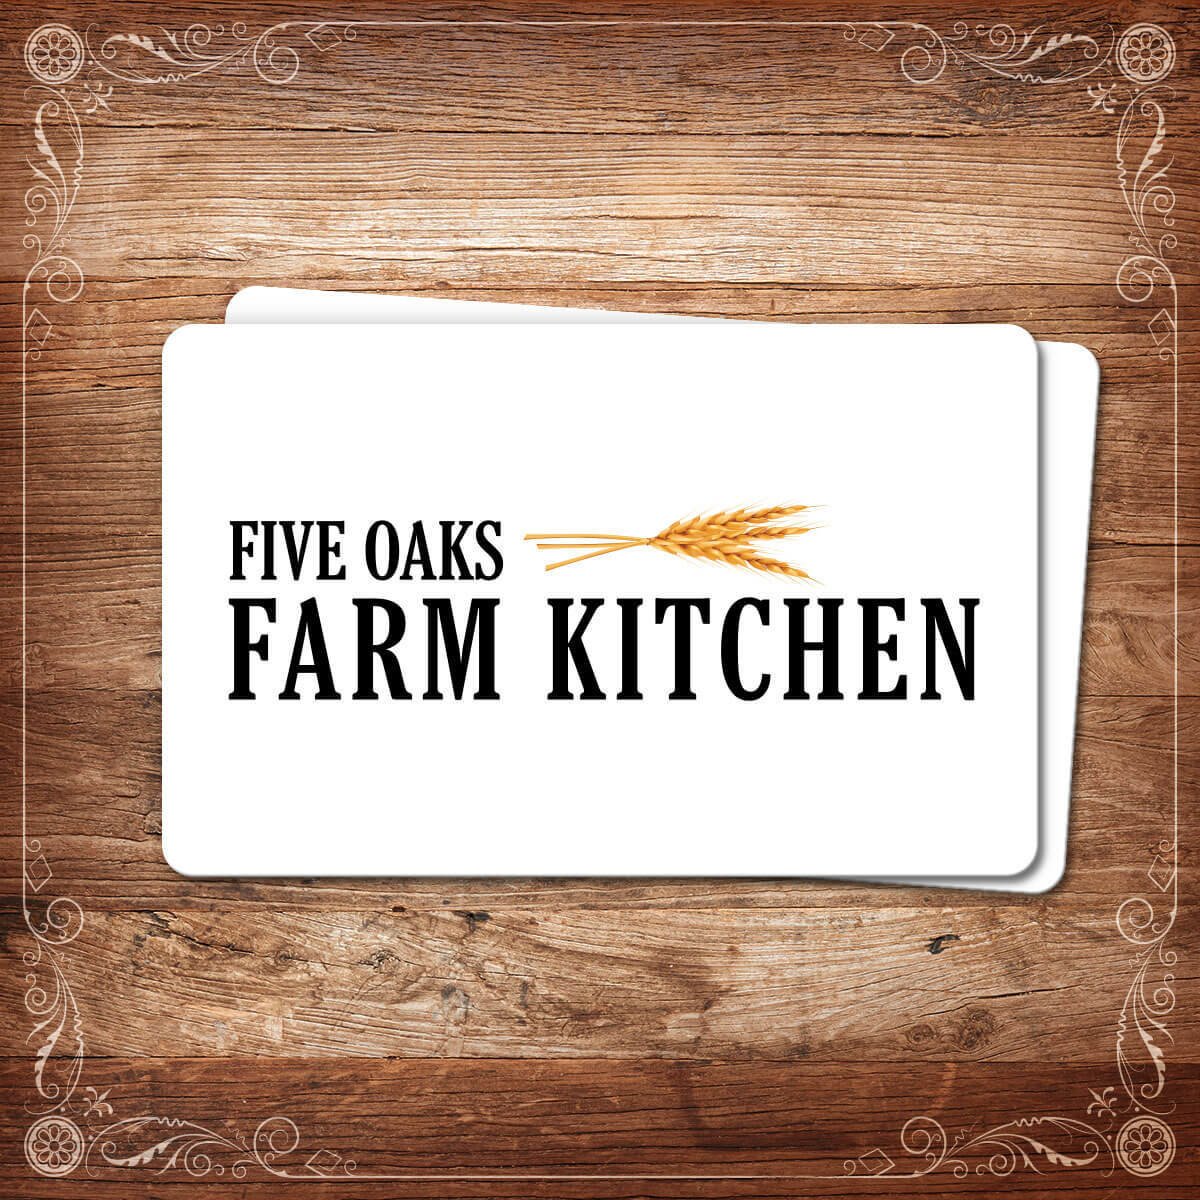 Five Oaks Farm Kitchen Menu